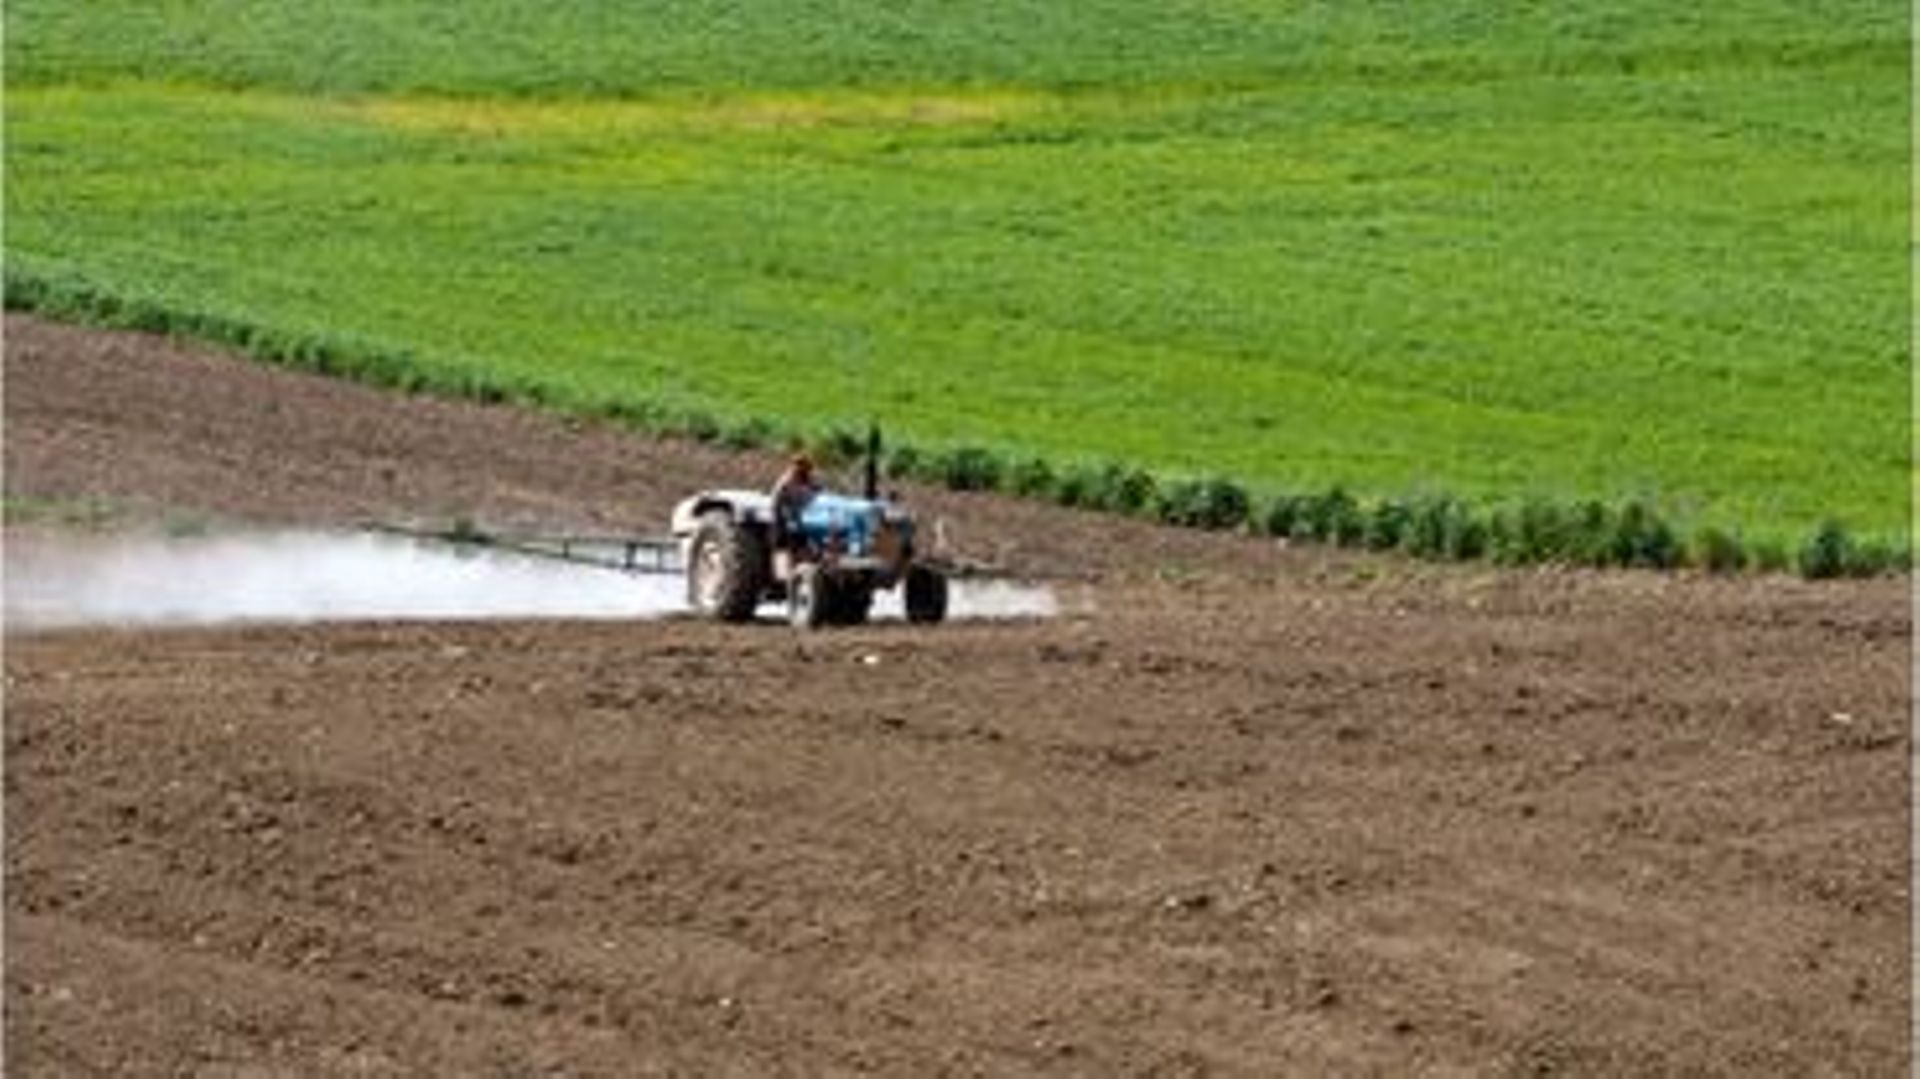 plus-de-80-des-terres-agricoles-europeennes-contiennent-des-pesticides